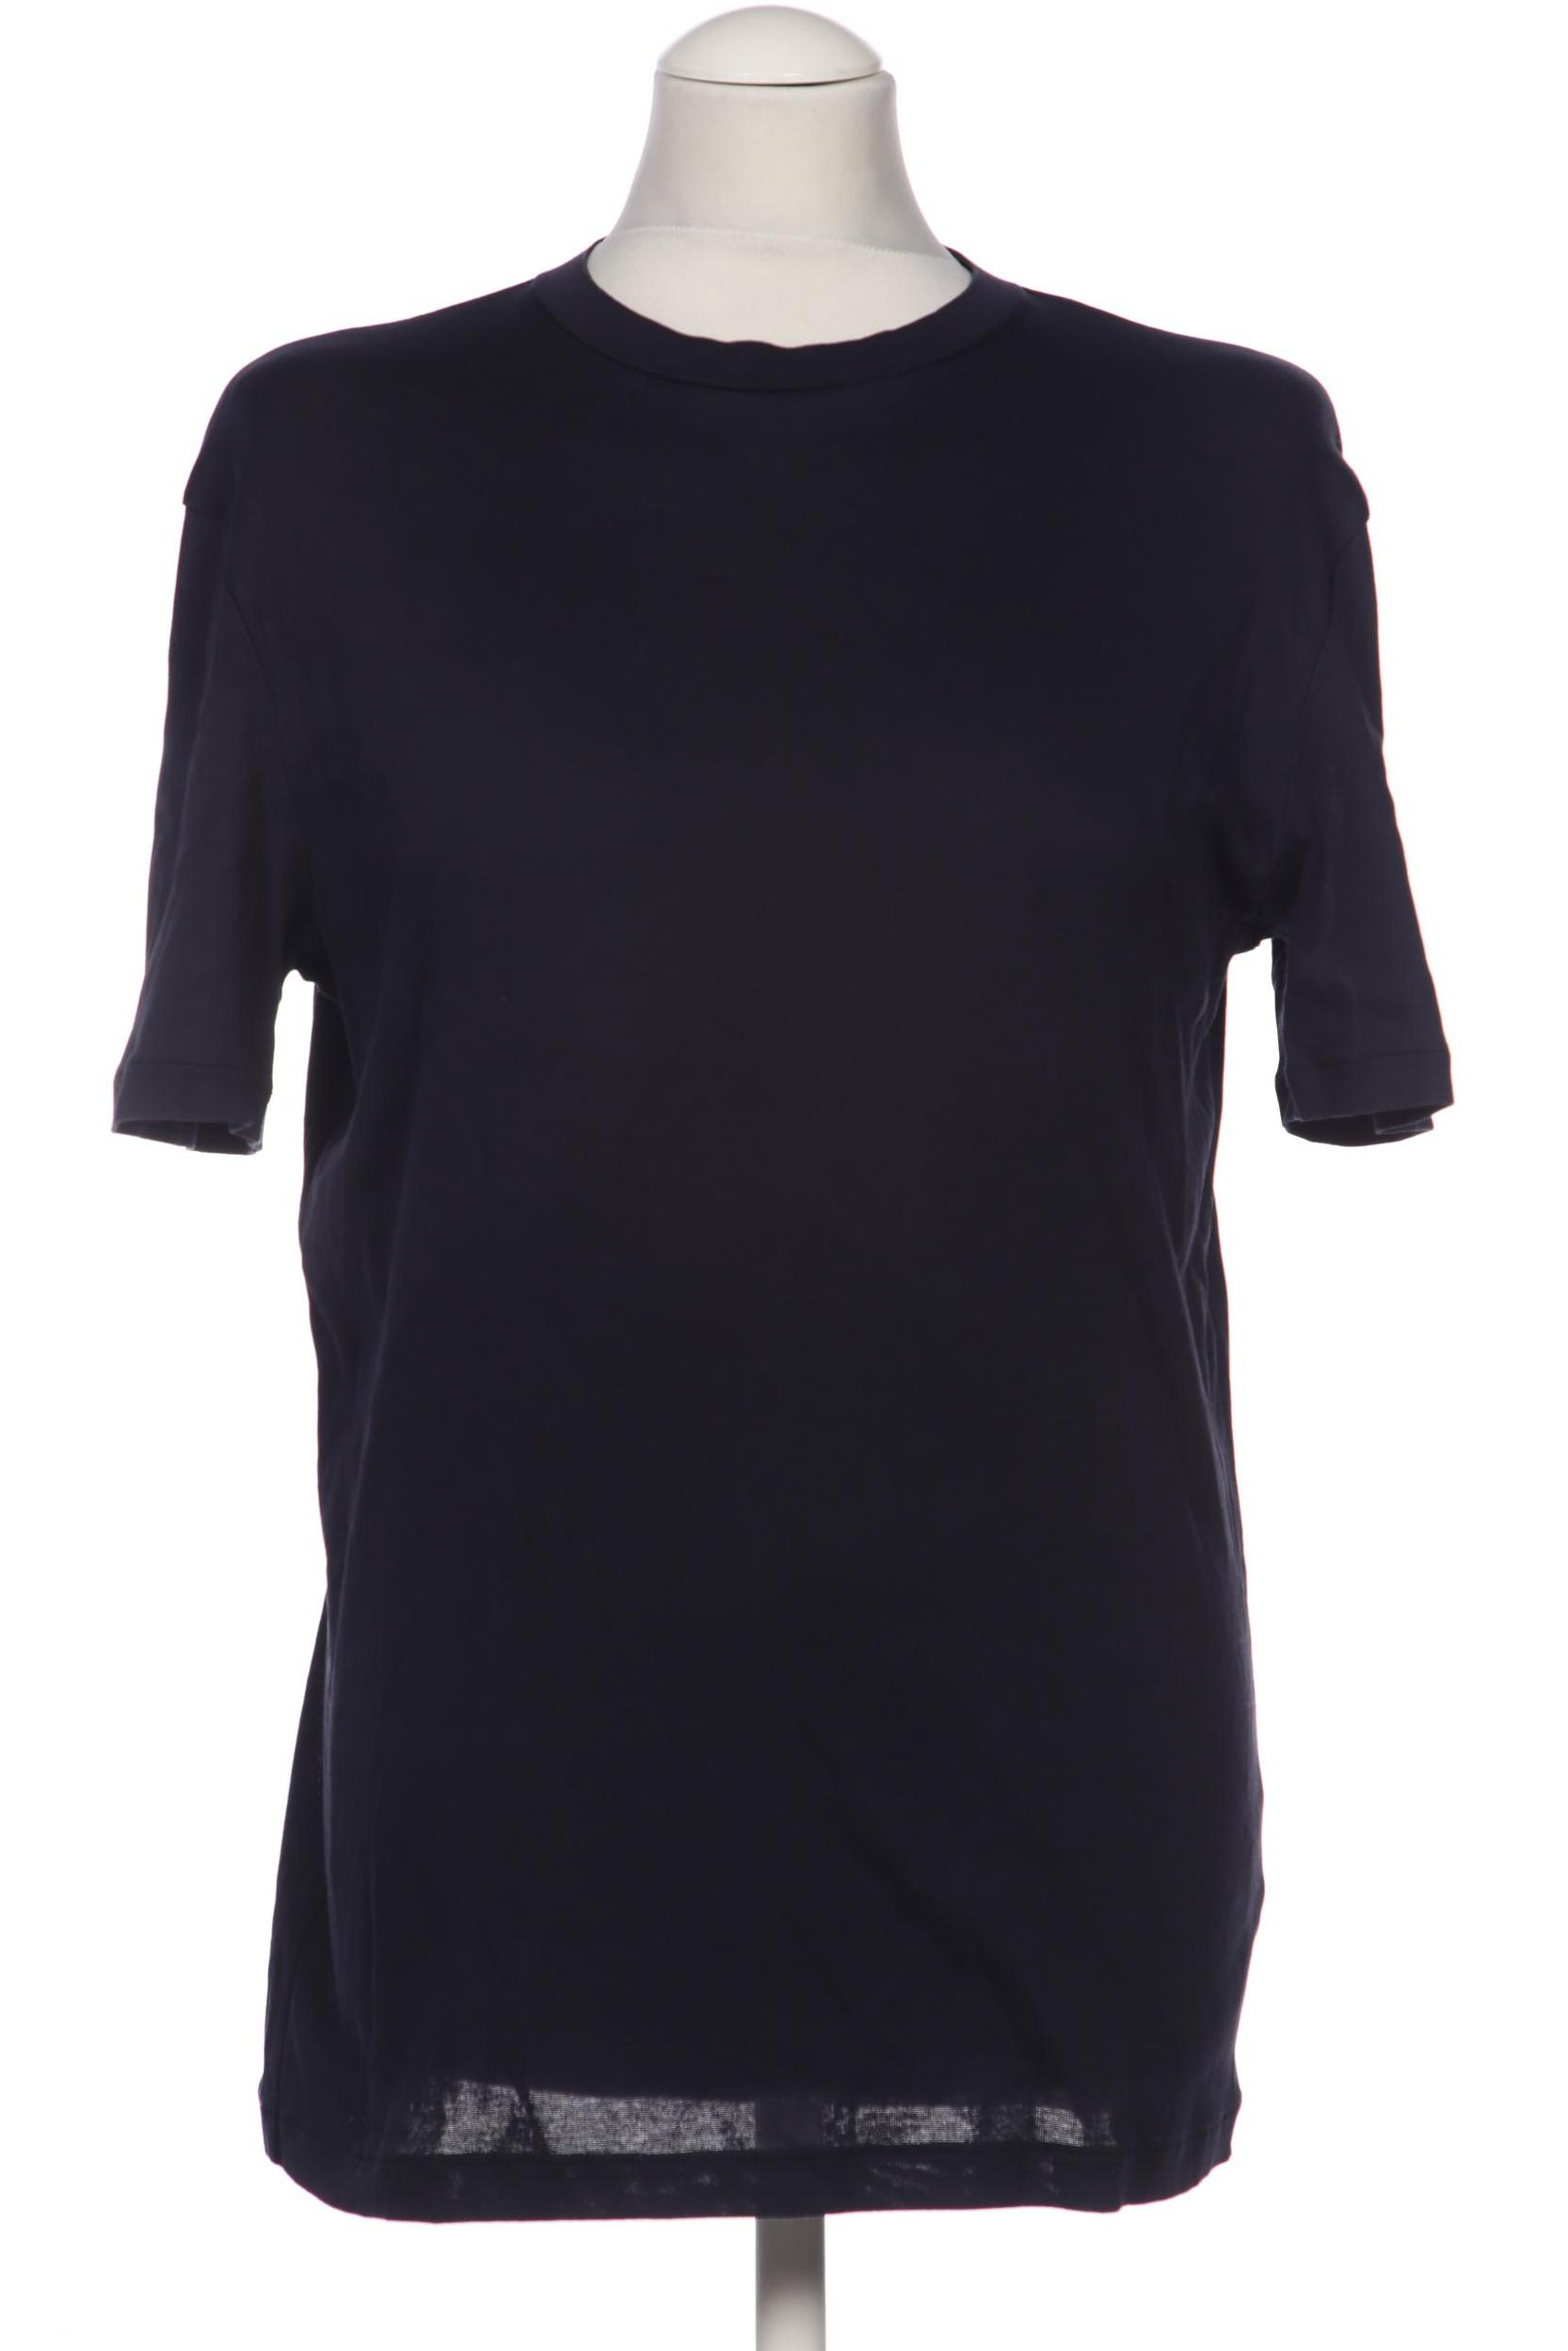 COS Herren T-Shirt, marineblau von COS